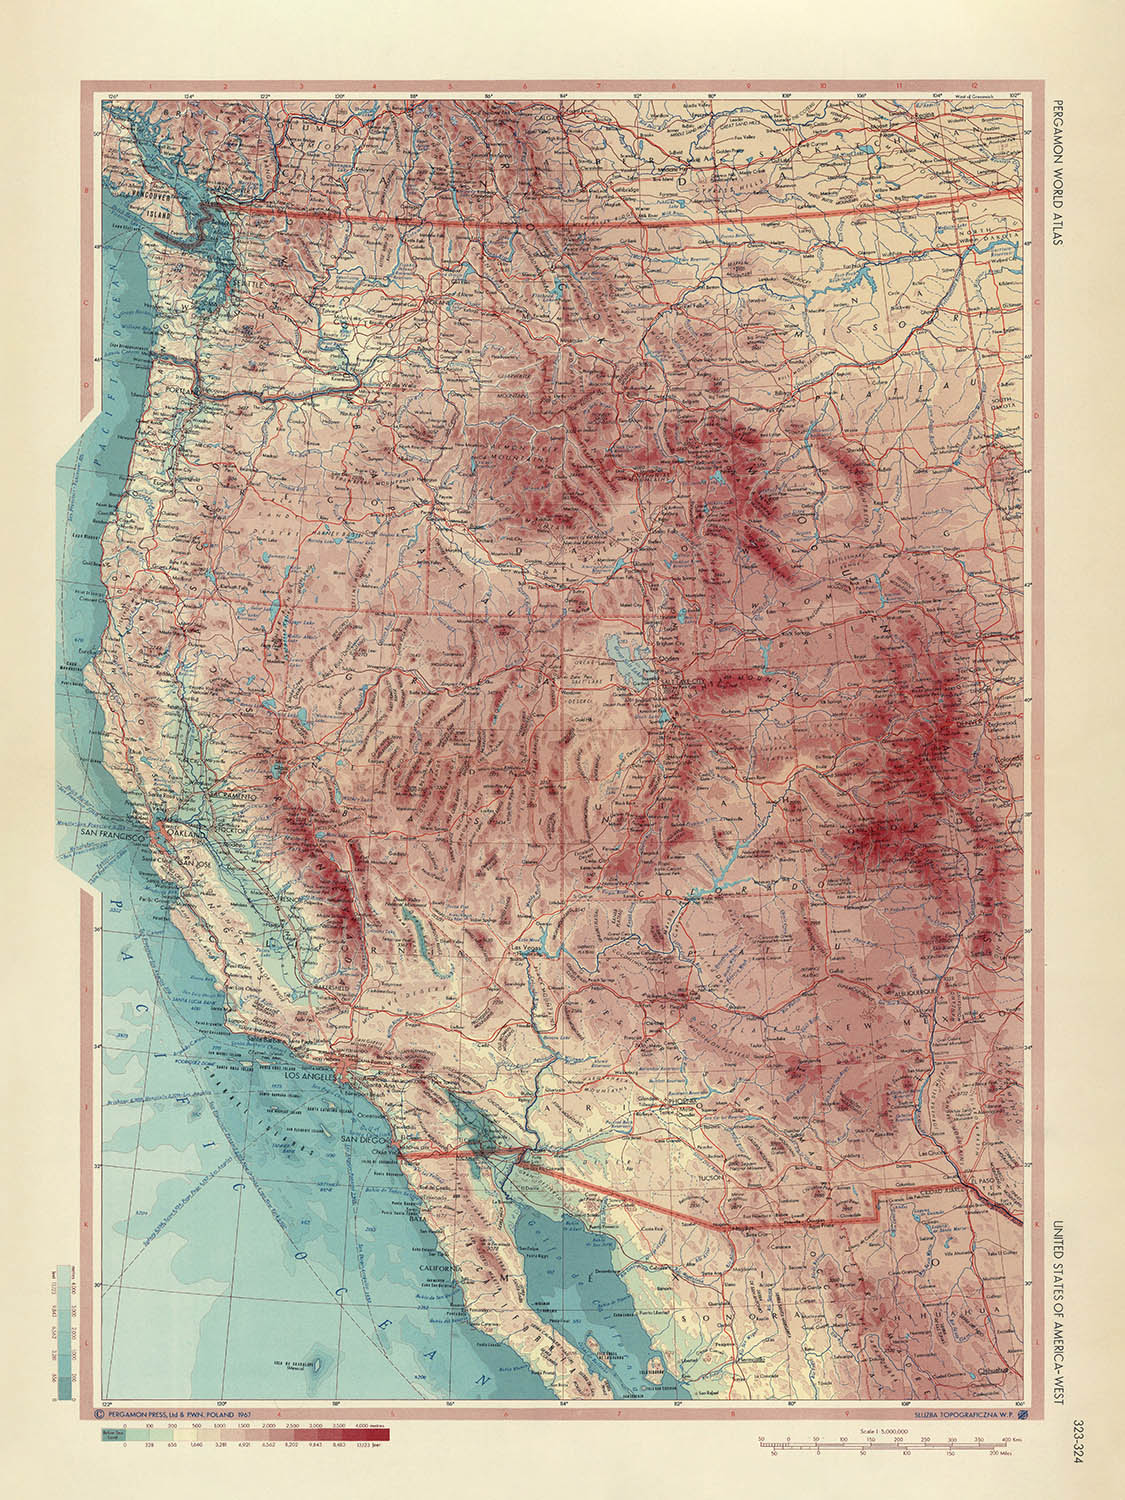 Alte Karte des Westens der Vereinigten Staaten, 1967: Los Angeles, San Francisco, Yosemite, Grand Canyon, Rocky Mountains